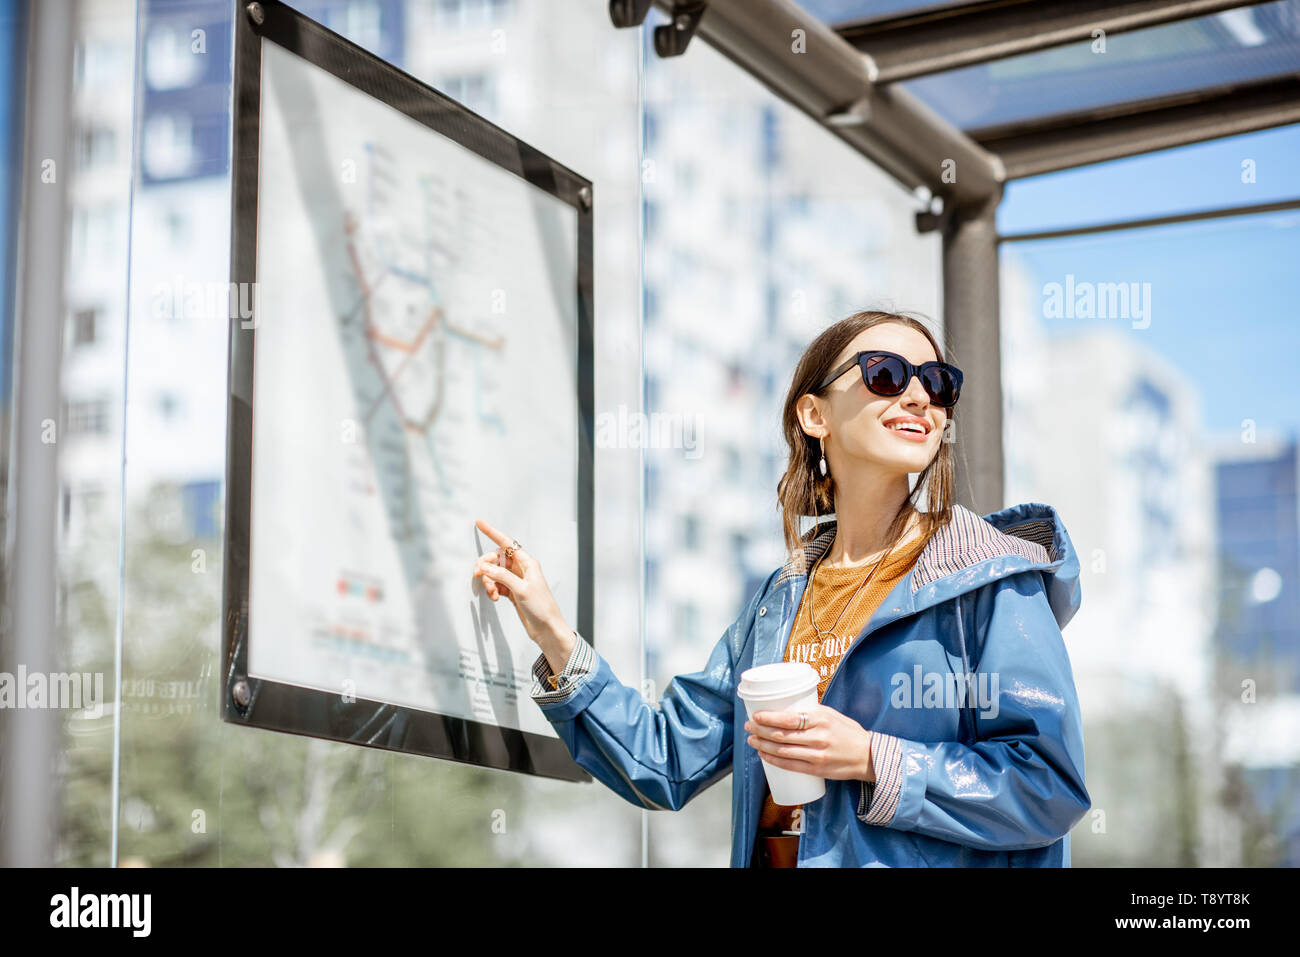 Frau auf der Suche nach der Regelung des öffentlichen Verkehrs während an der Straßenbahnhaltestelle im Freien stehend Stockfoto